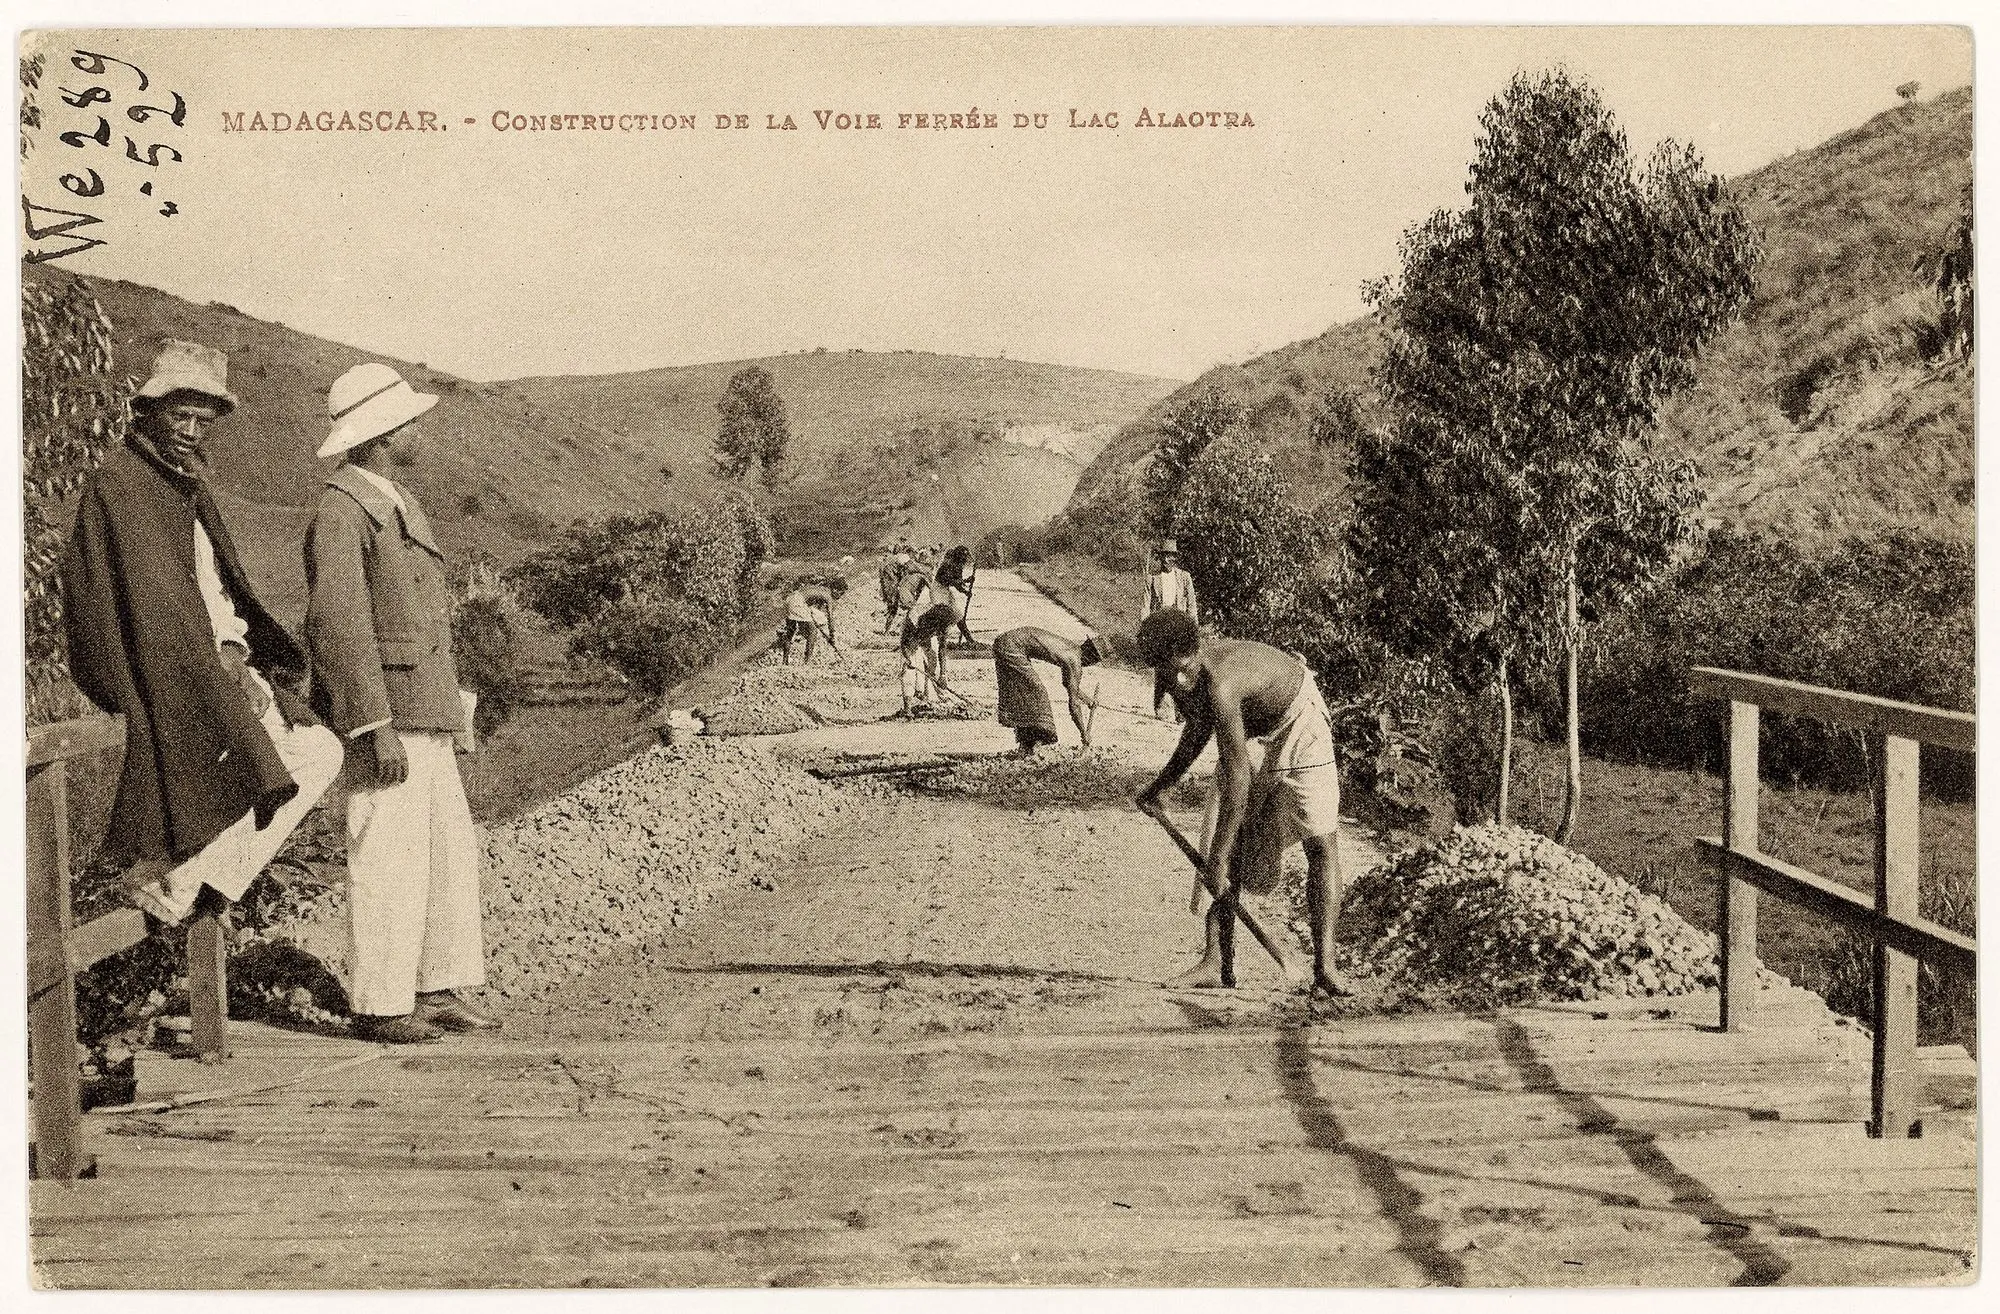 Construction de la voie ferrée Tananarive‑Tamatave à Madagascar, photographie anonyme, v. 1908.